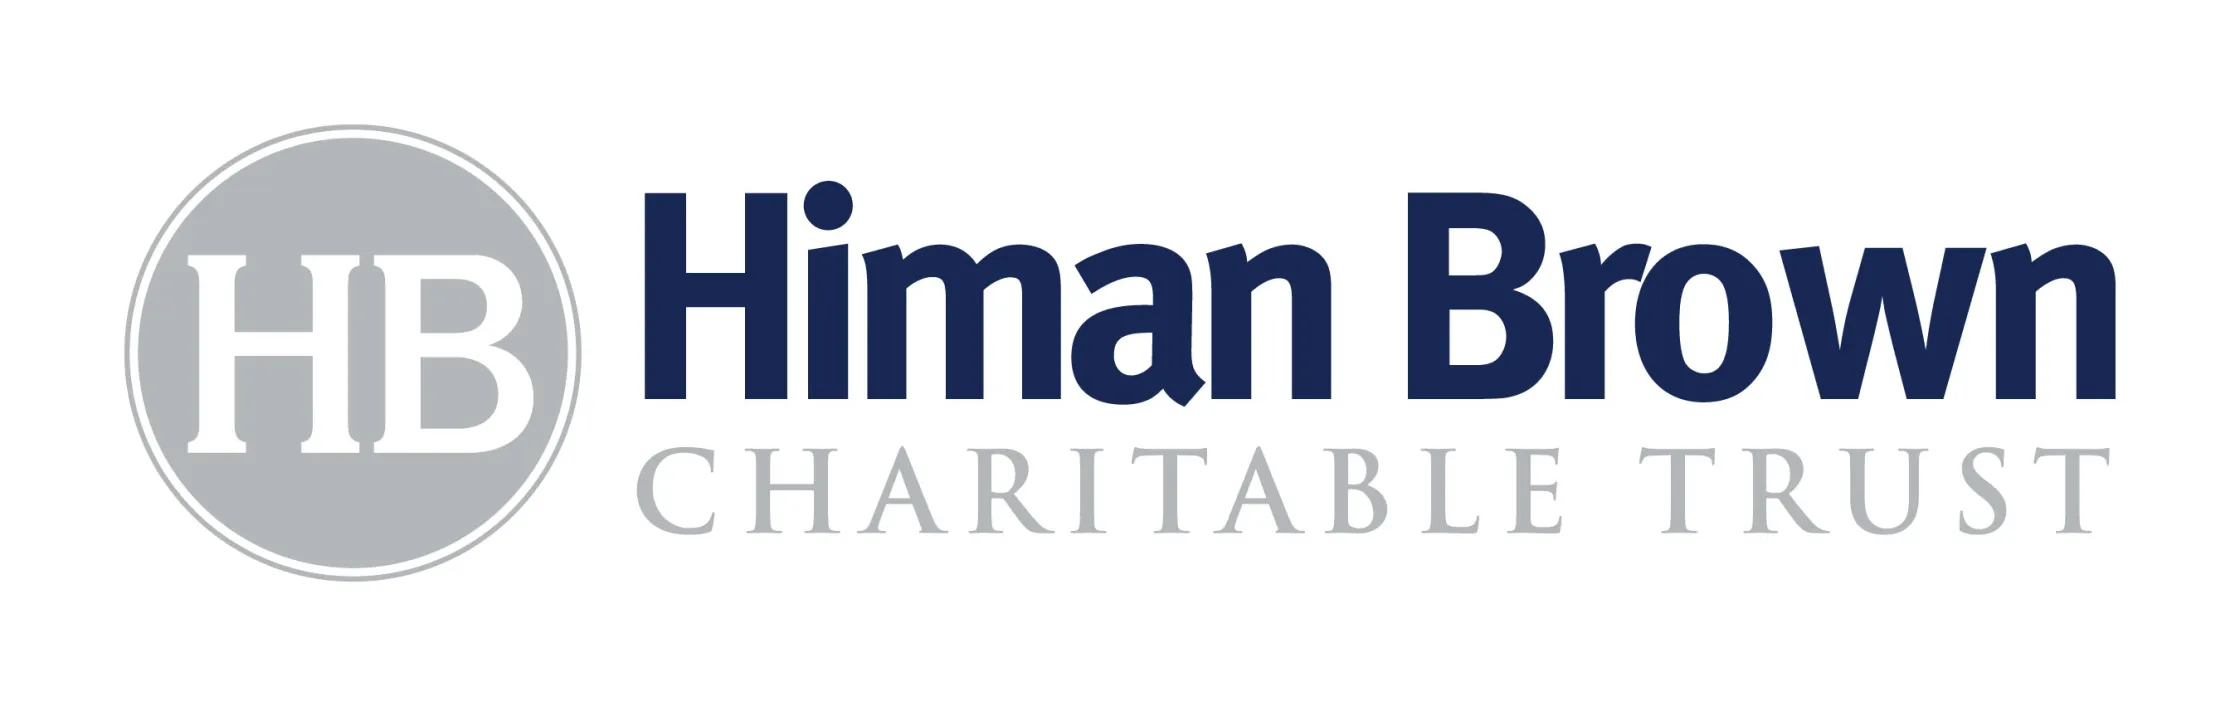 Himan Brown Charitable Trust